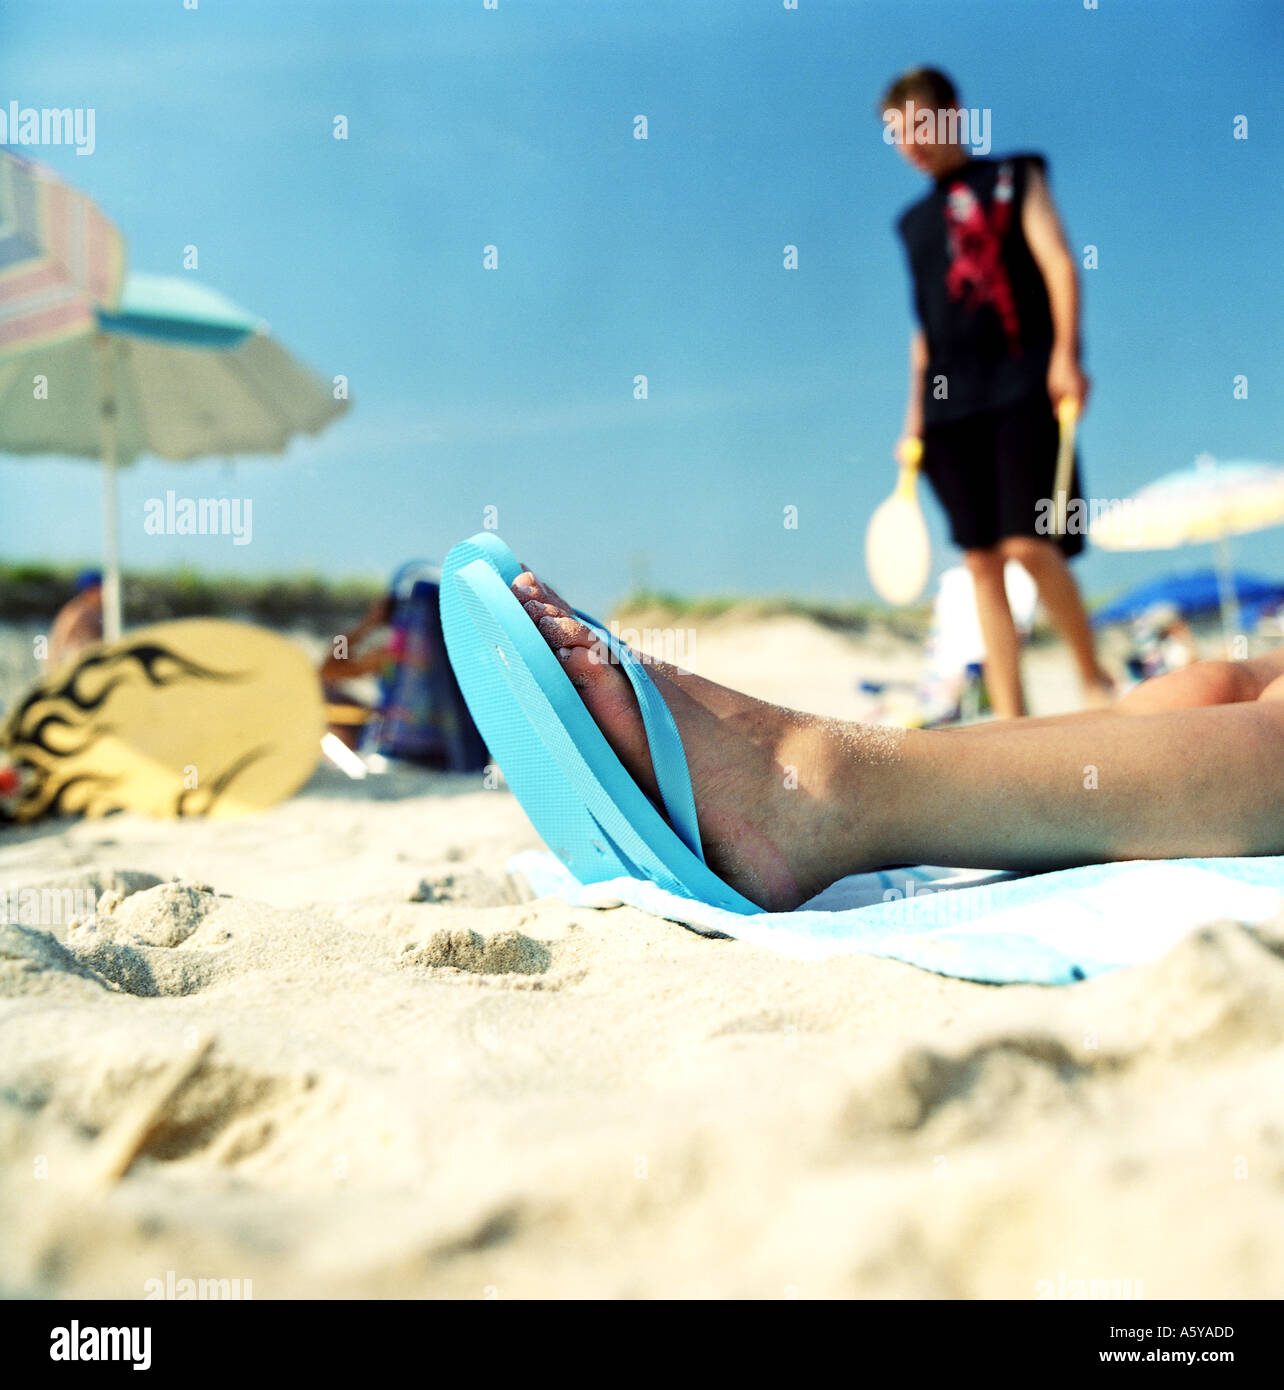 Strand-Szene im Hintergrund ein Teenager auf der Vorderseite sieht man Frau s Füße in flip flops Stockfoto